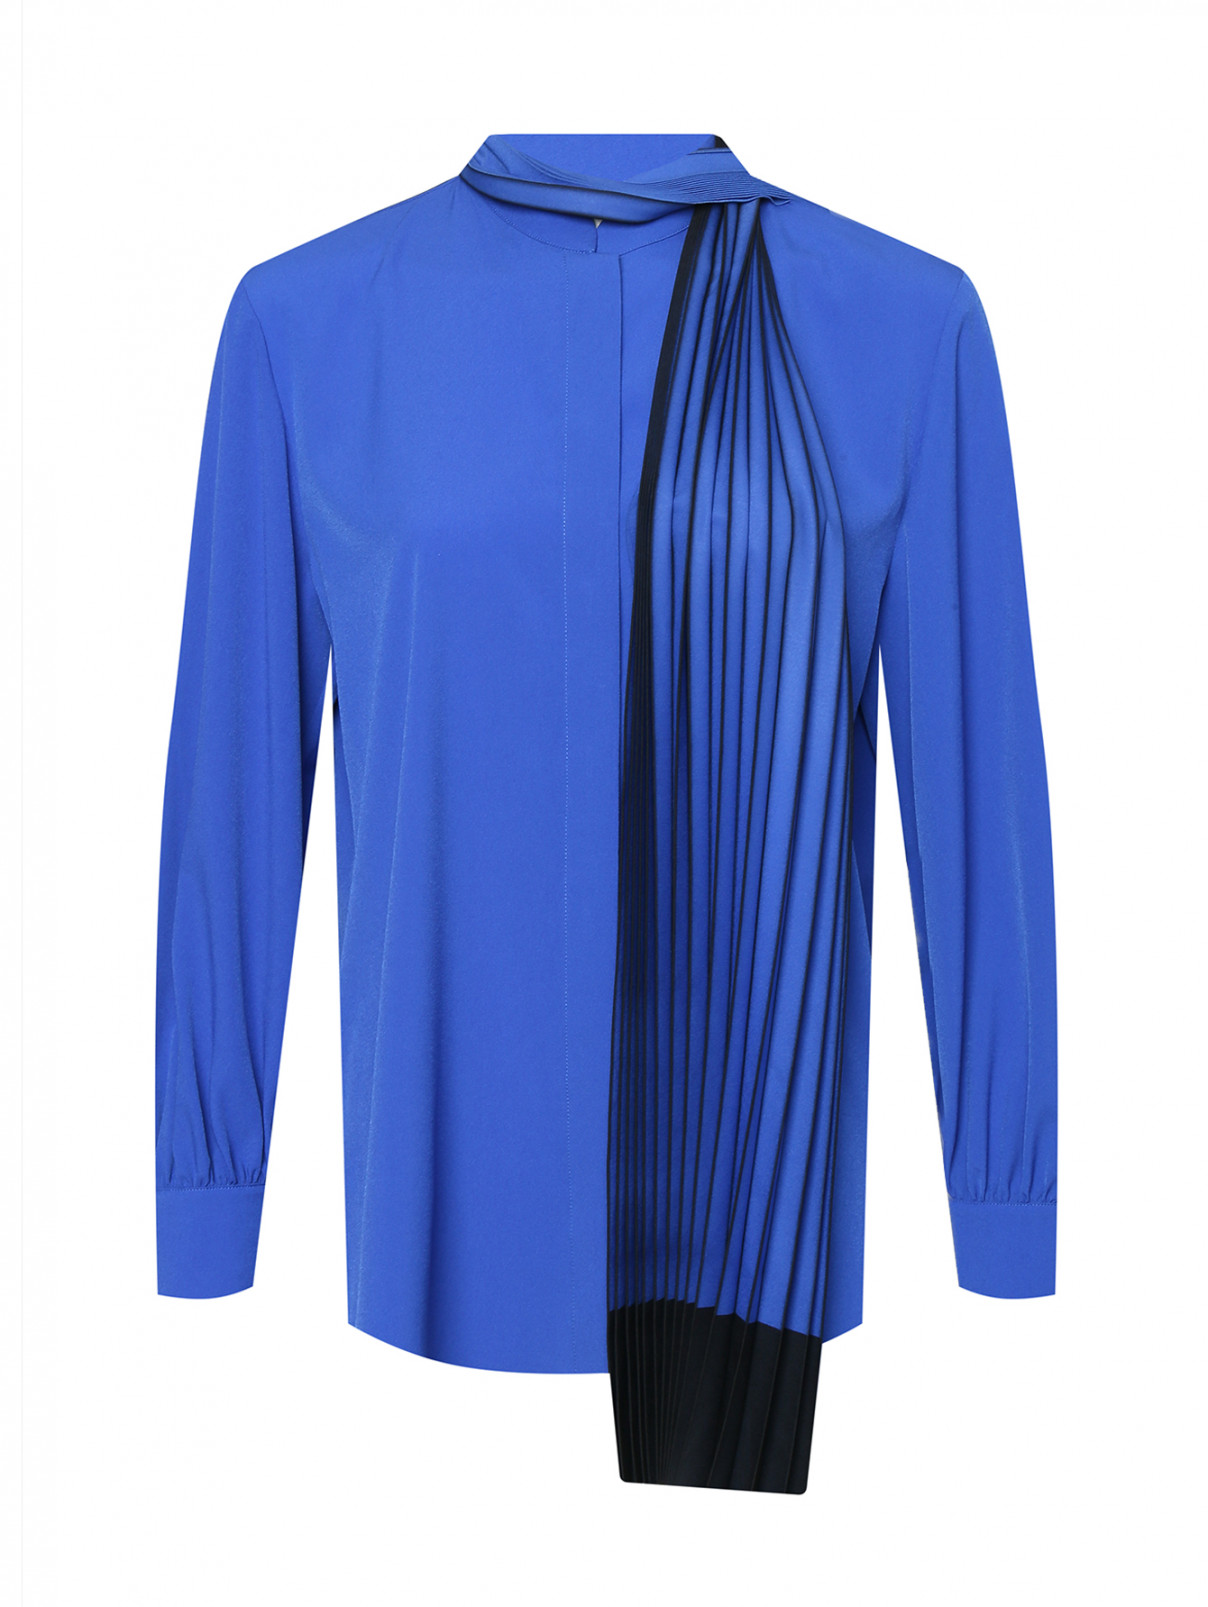 Блуза на пуговицах с поясом Marina Rinaldi  –  Общий вид  – Цвет:  Синий